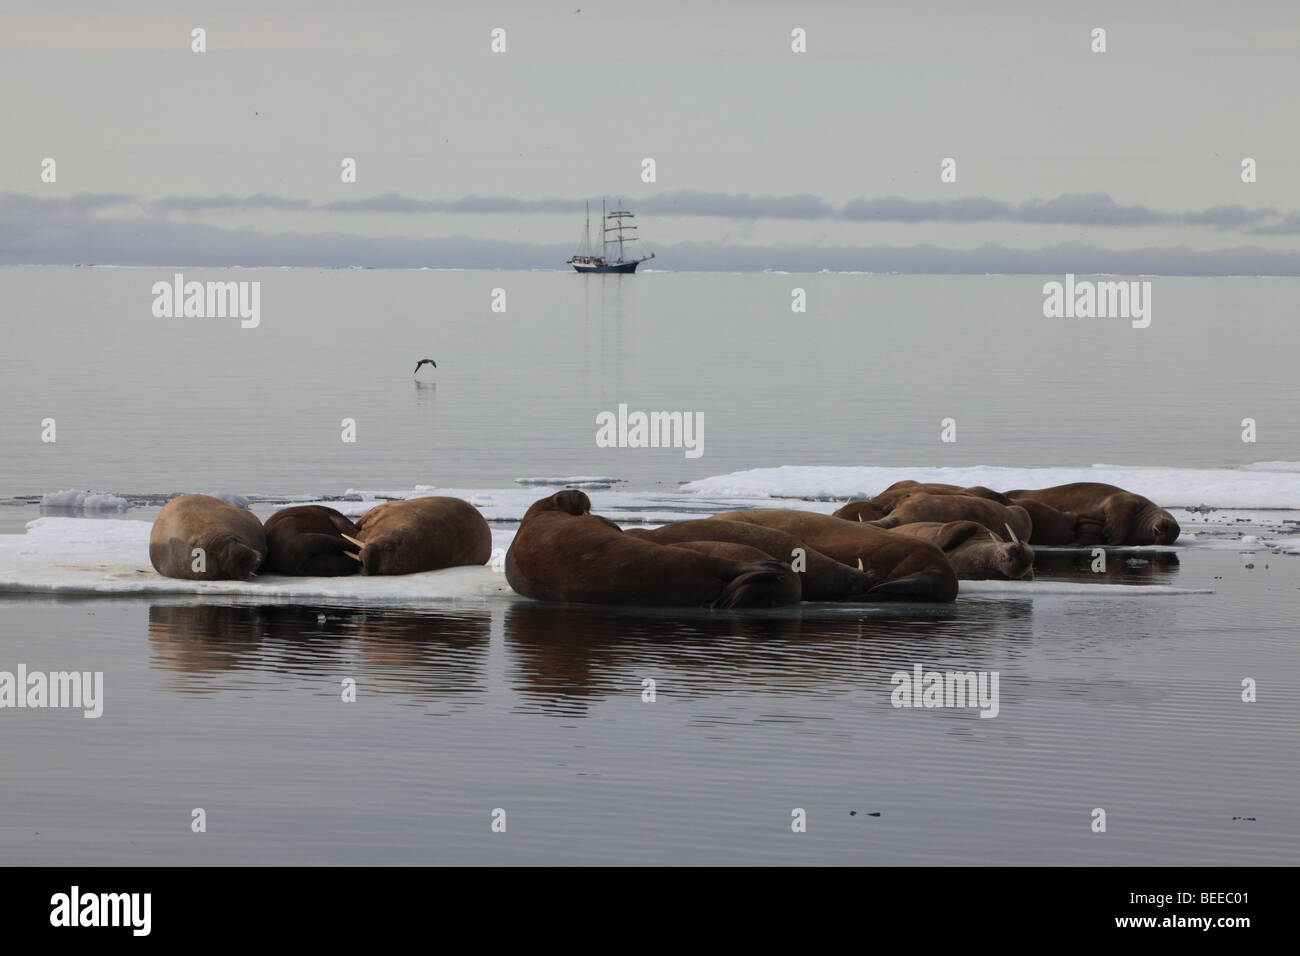 Tricheco in appoggio sulla banchisa nell'Oceano Artico a nord delle isole Svalbard con nave a vela in background Foto Stock